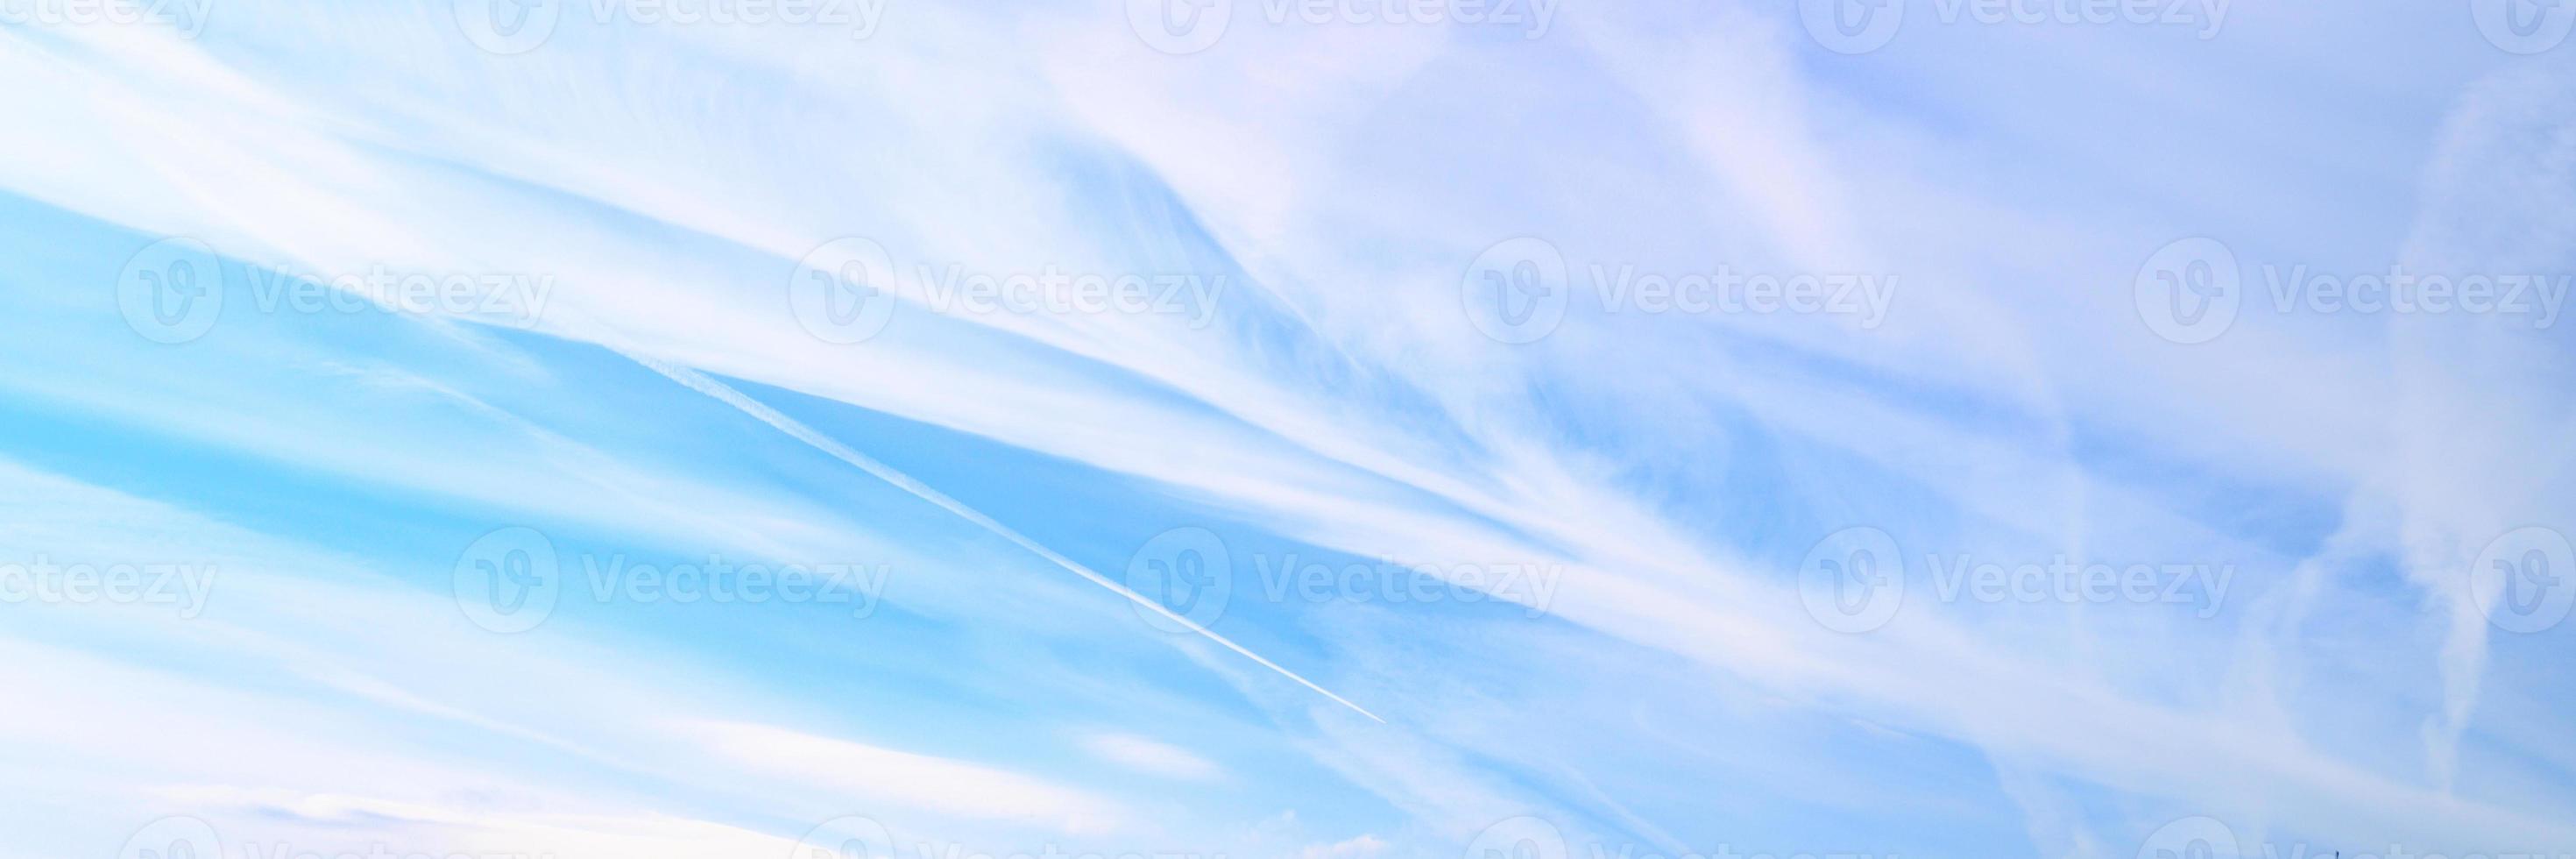 lindas nuvens de céu azul foto